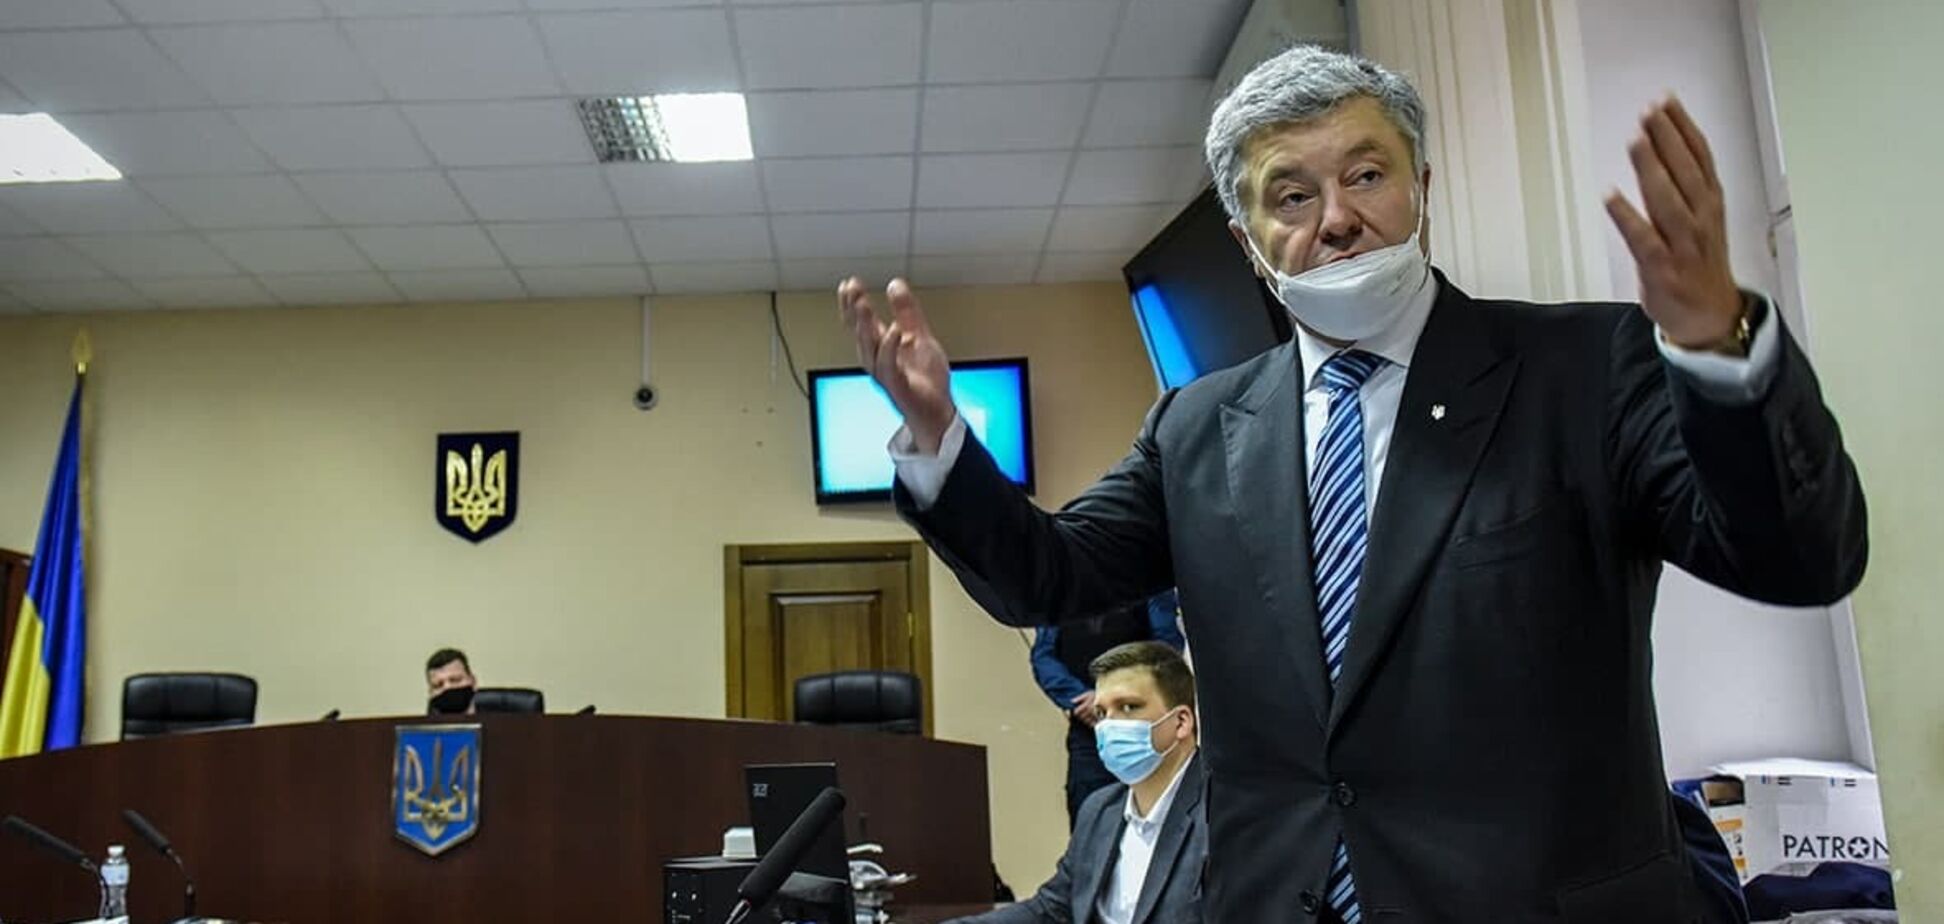 Заседание Апелляционного суда Киева по избранию меры пресечения Порошенко перенесли: названа причина